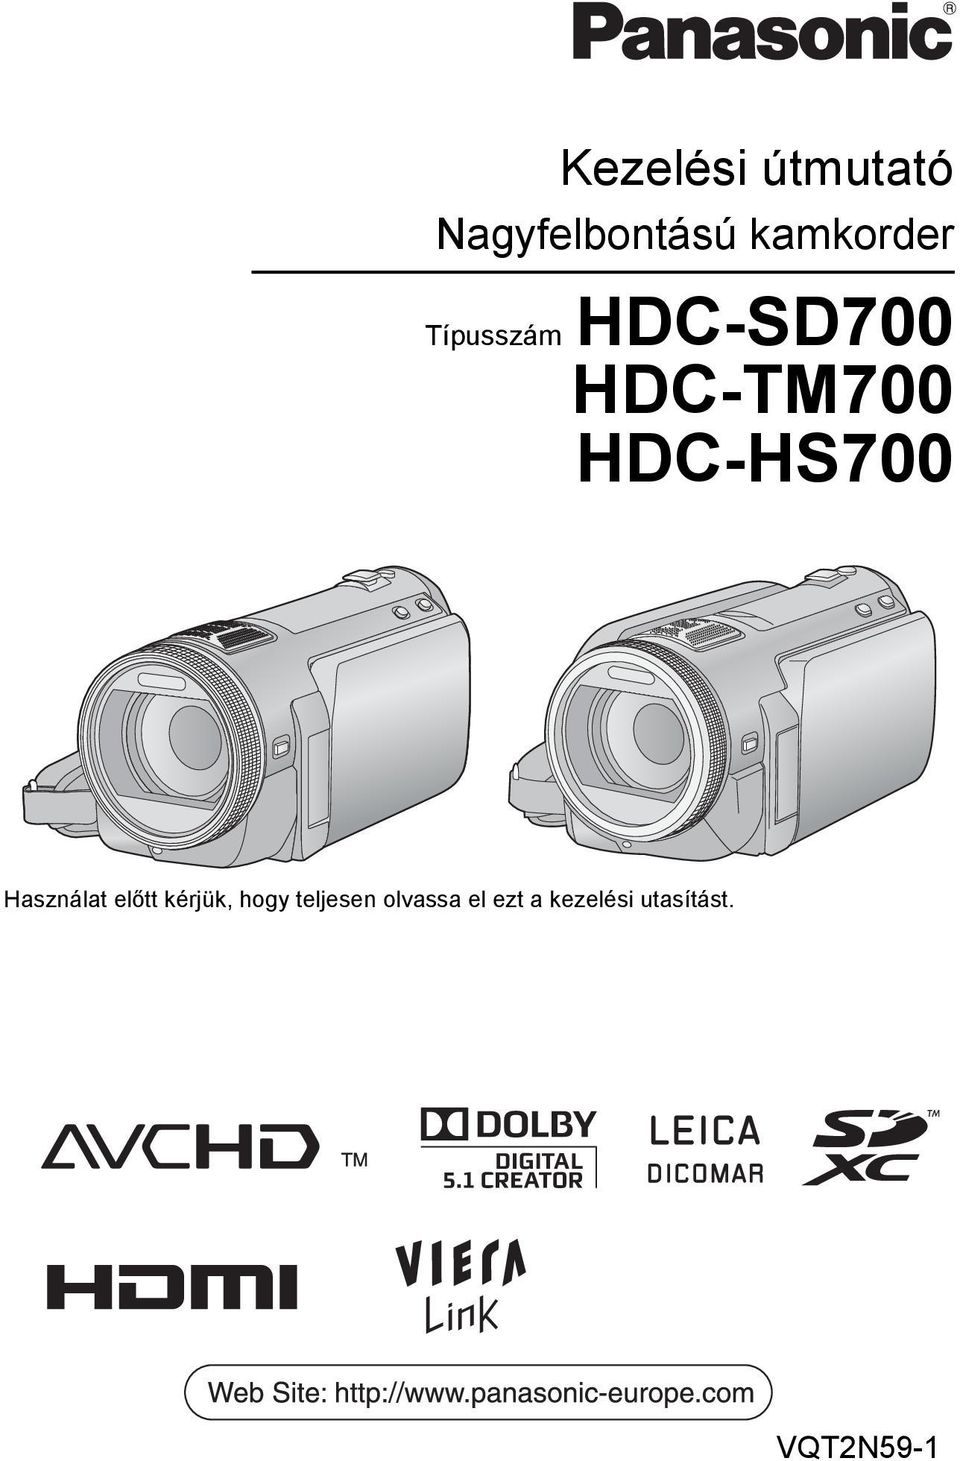 Kezelési útmutató. Nagyfelbontású kamkorder VQT2N59-1. Típusszám HDC-SD700  HDC-TM700 HDC-HS700 - PDF Free Download